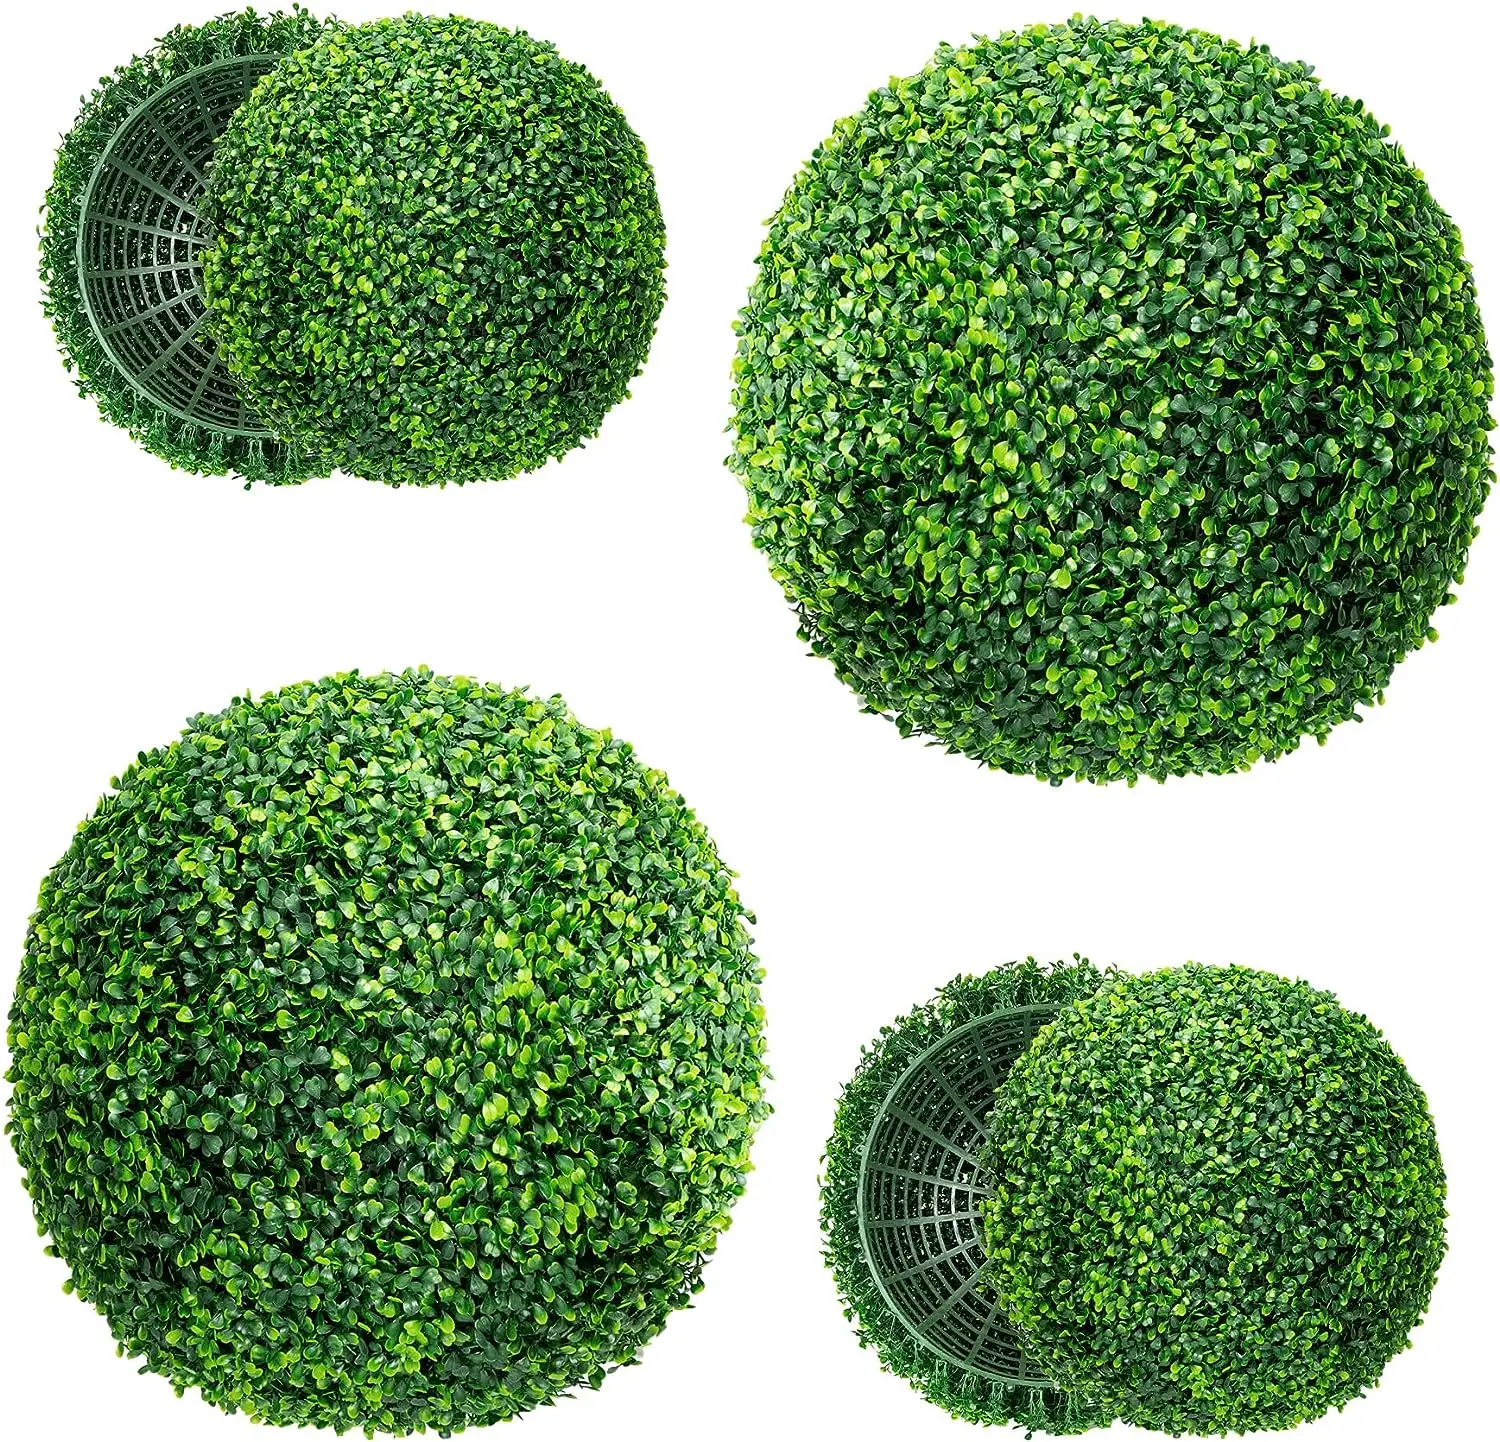 ลูกบอล topiary ทำจากไม้เทียมสำหรับกลางแจ้งลานสวนระเบียงและในร่มบ้านตกแต่งงานแต่งงาน